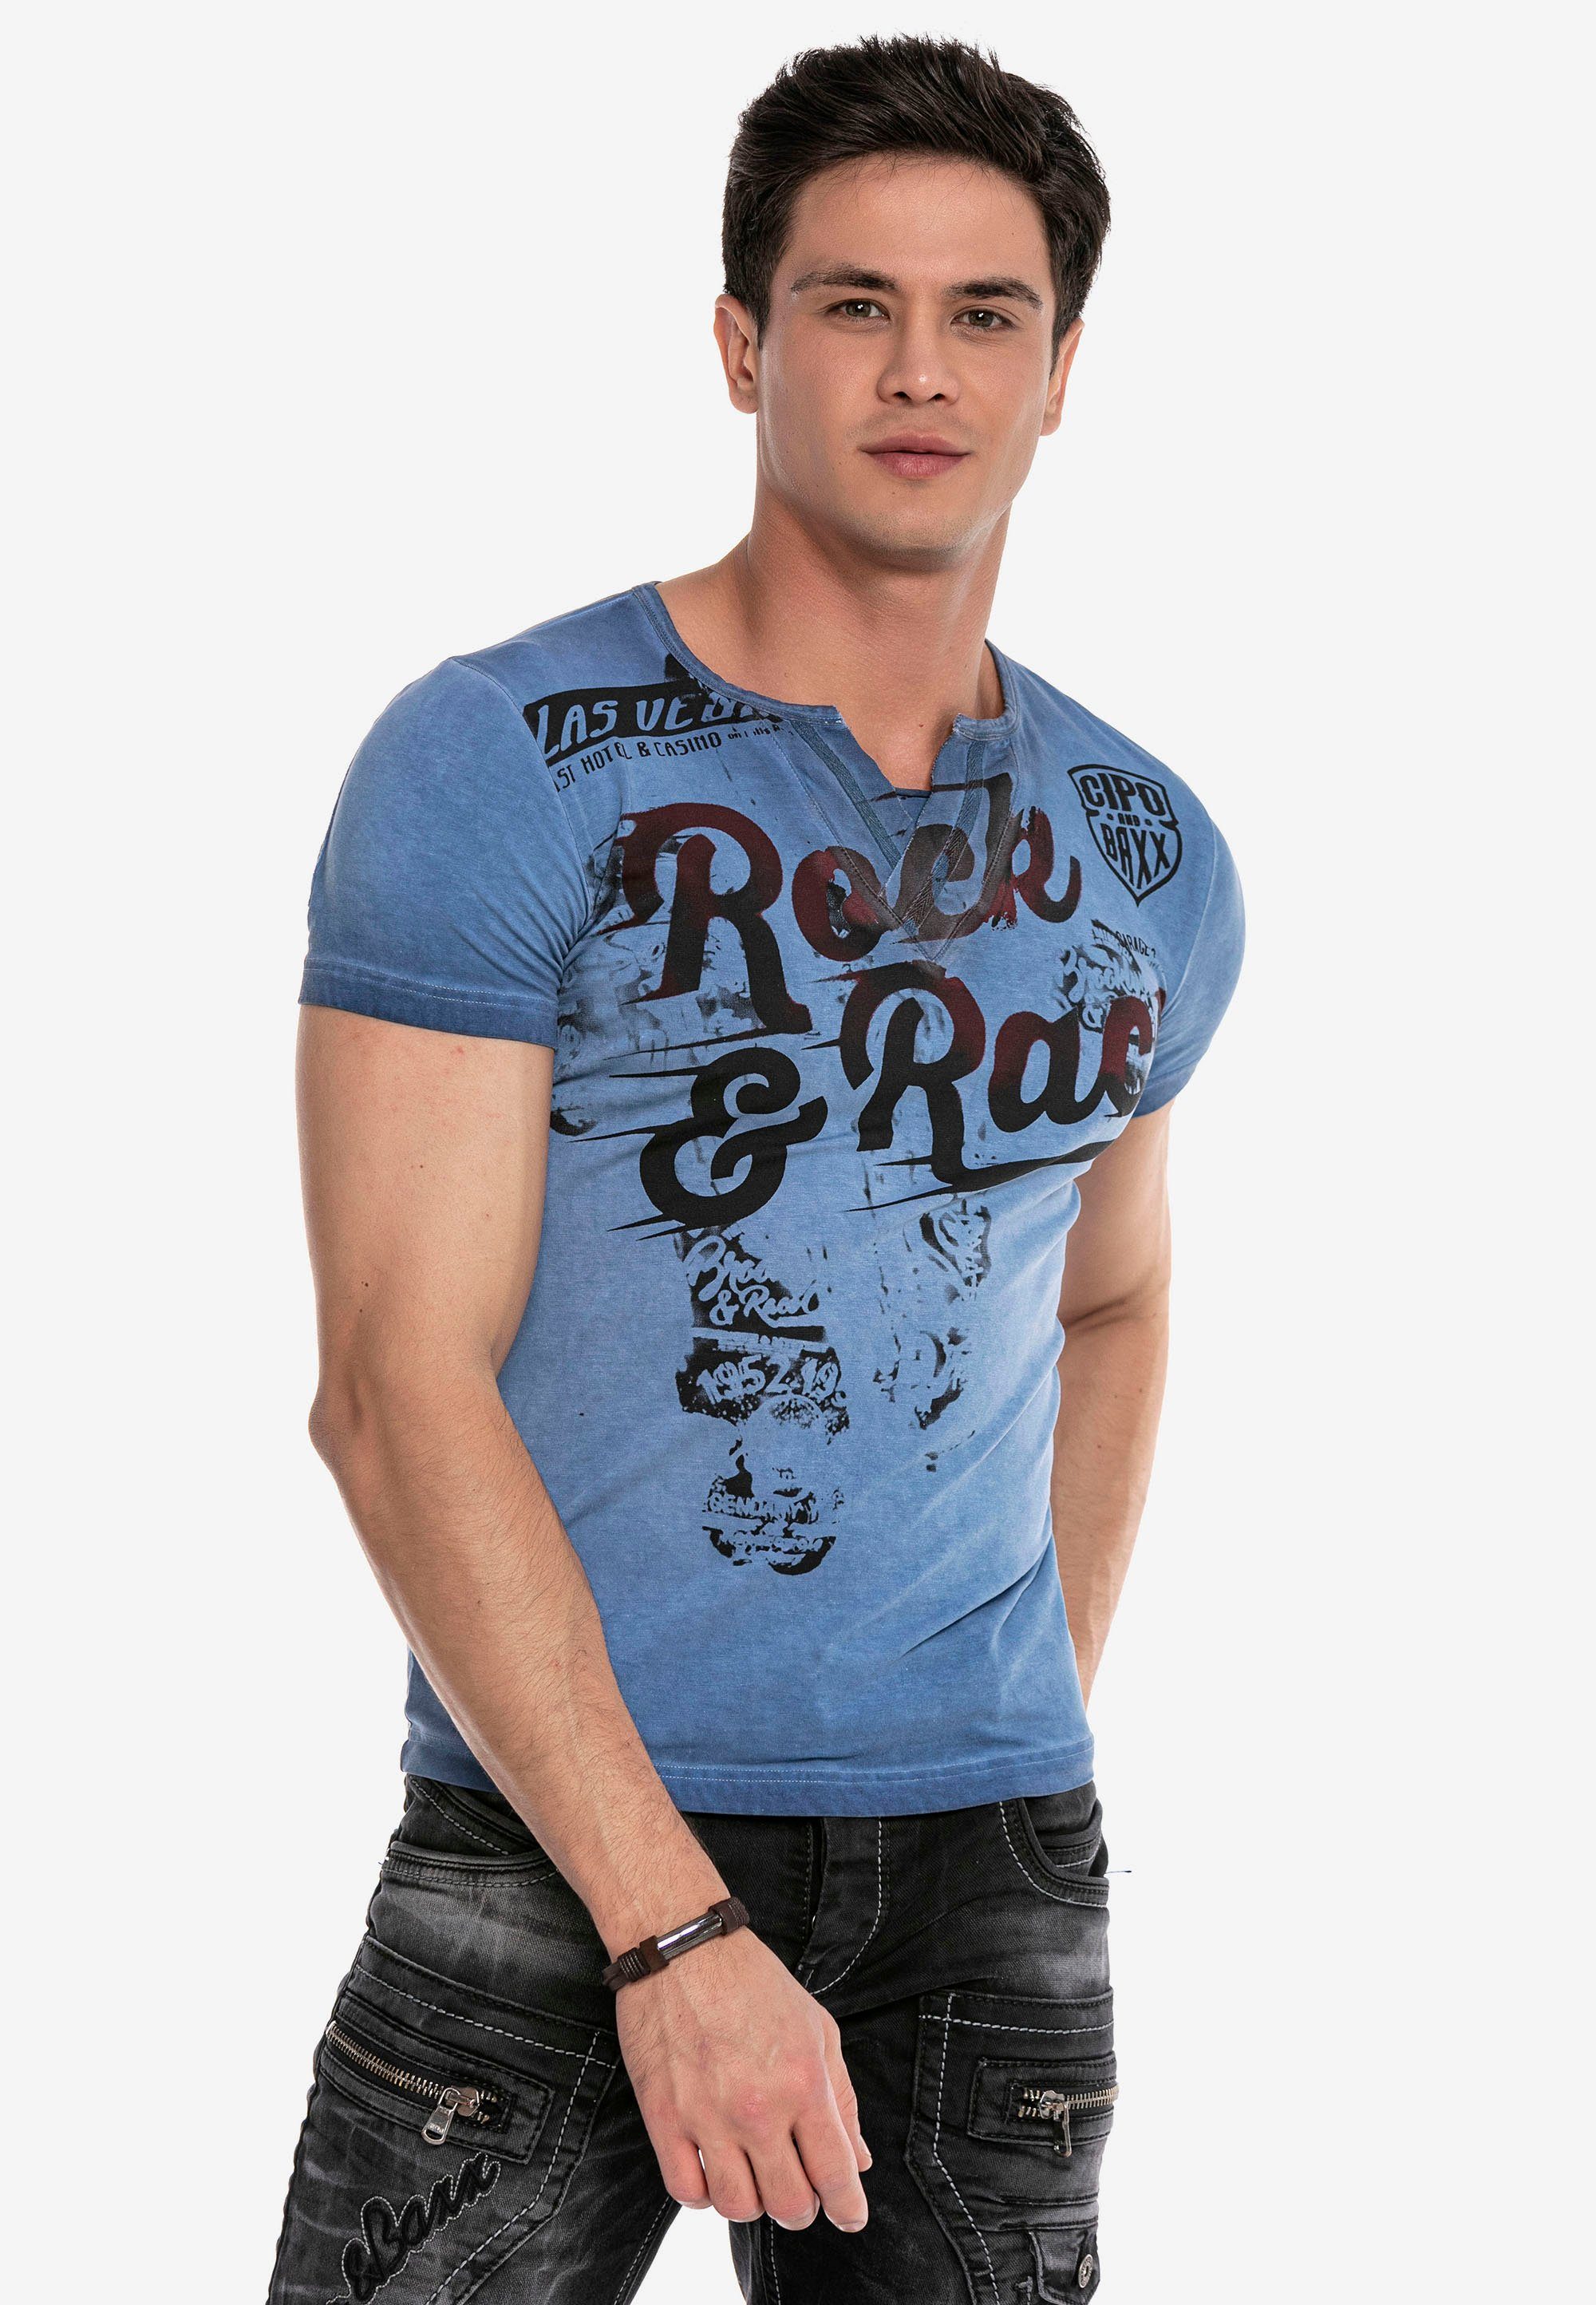 & Baxx blau mit Aufdruck Rock&Pace T-Shirt Cipo